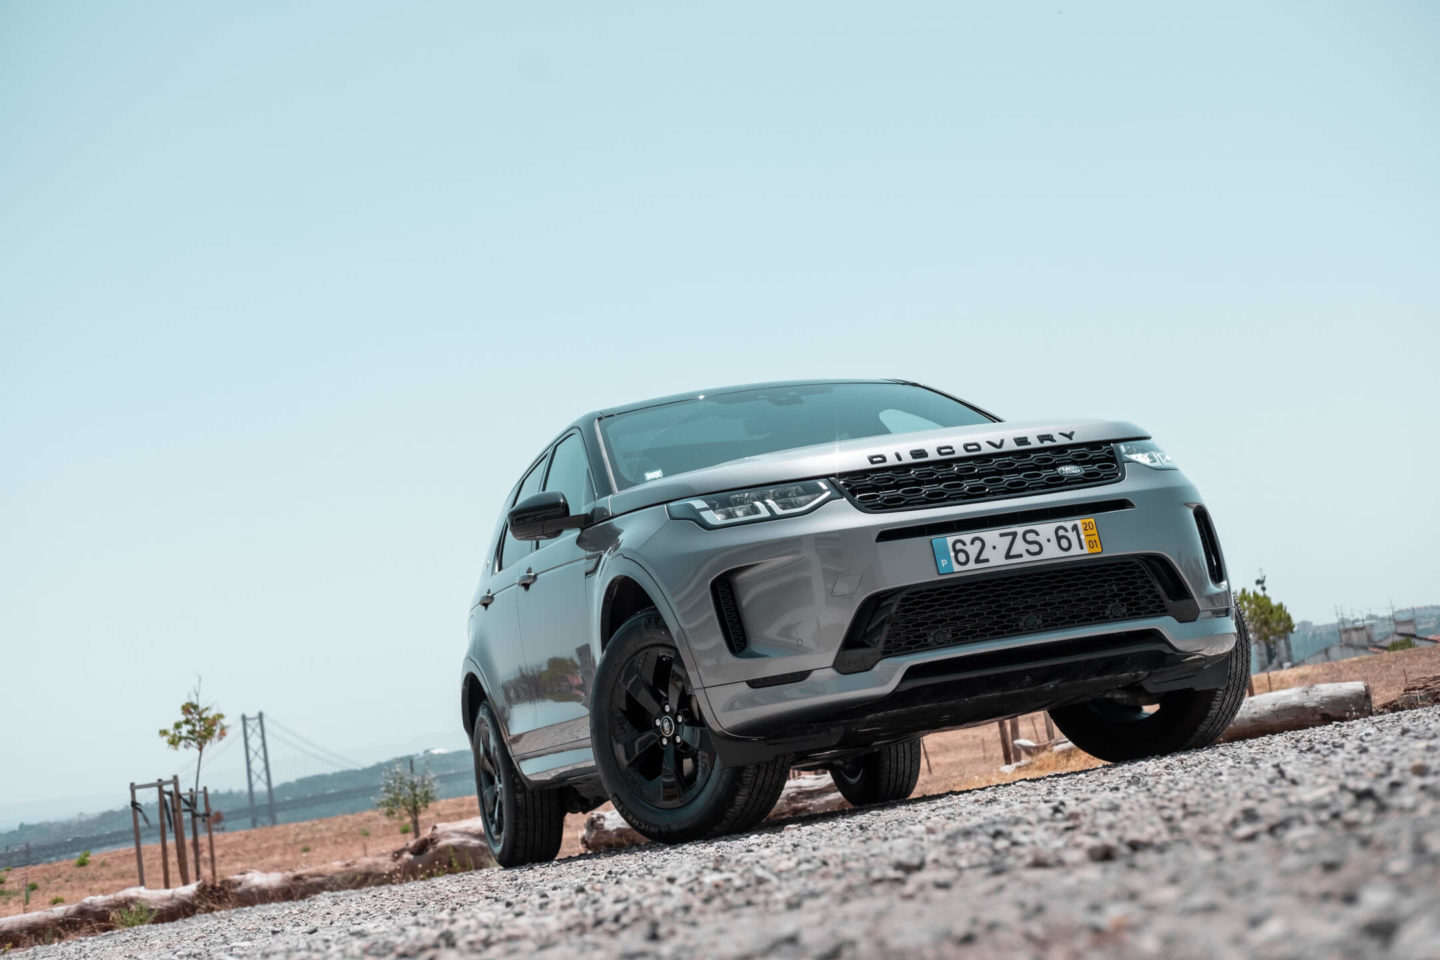 Testámos o Land Rover Discovery Sport de… tração dianteira. “Concentrado” de Land Rover